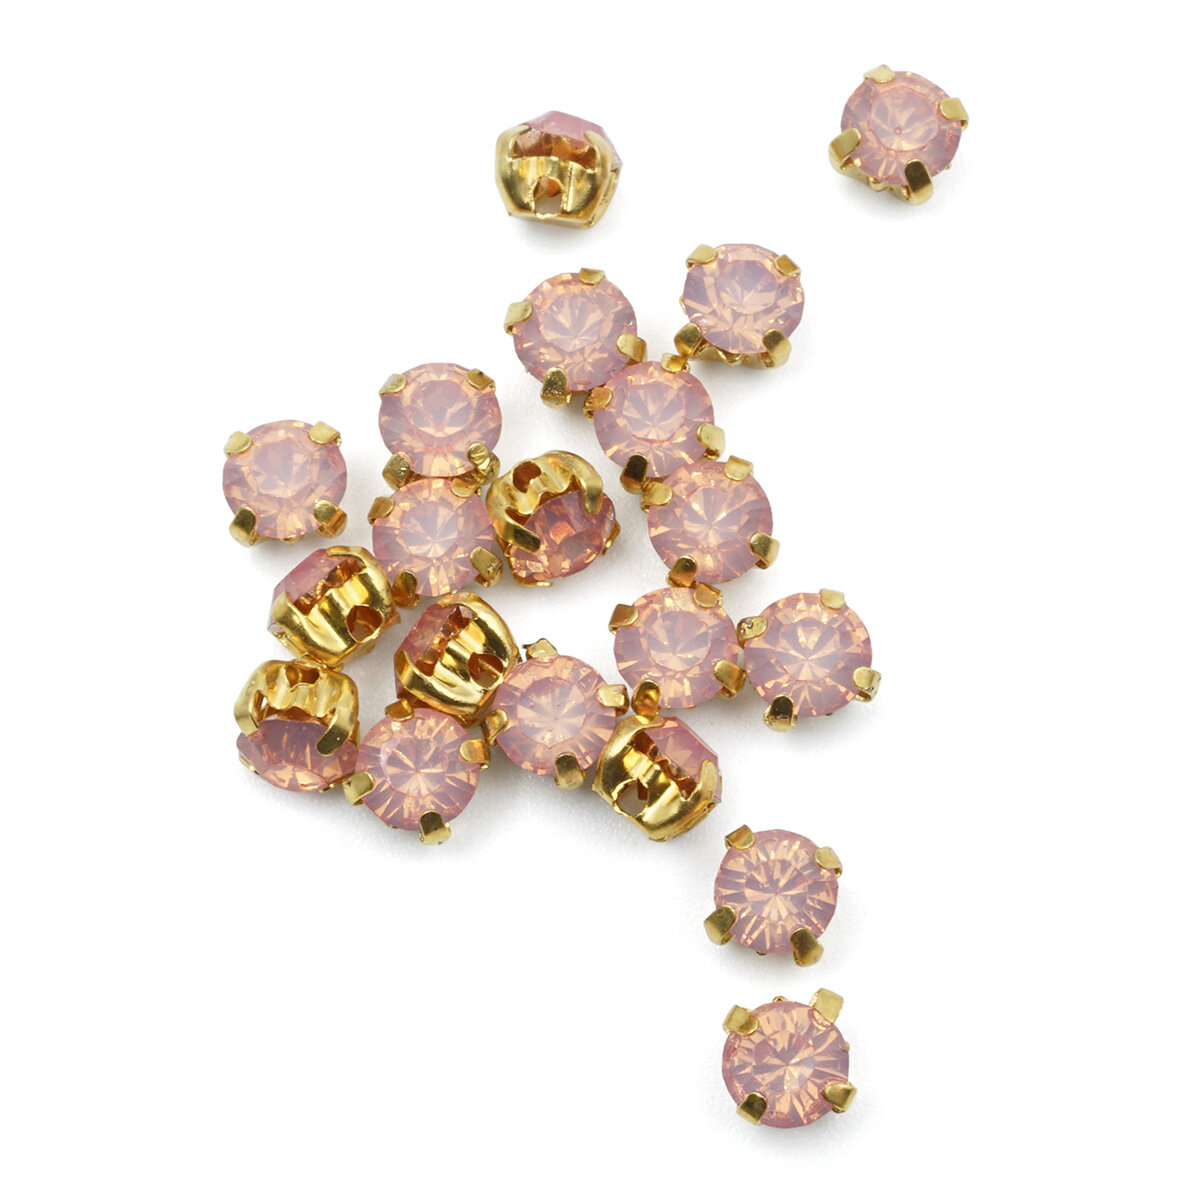 ЗЦ009ММ44 Хрустальные стразы в цапах (золото), цвет: розовый матовый 4 мм, 20 шт/упак, Astra&Craft